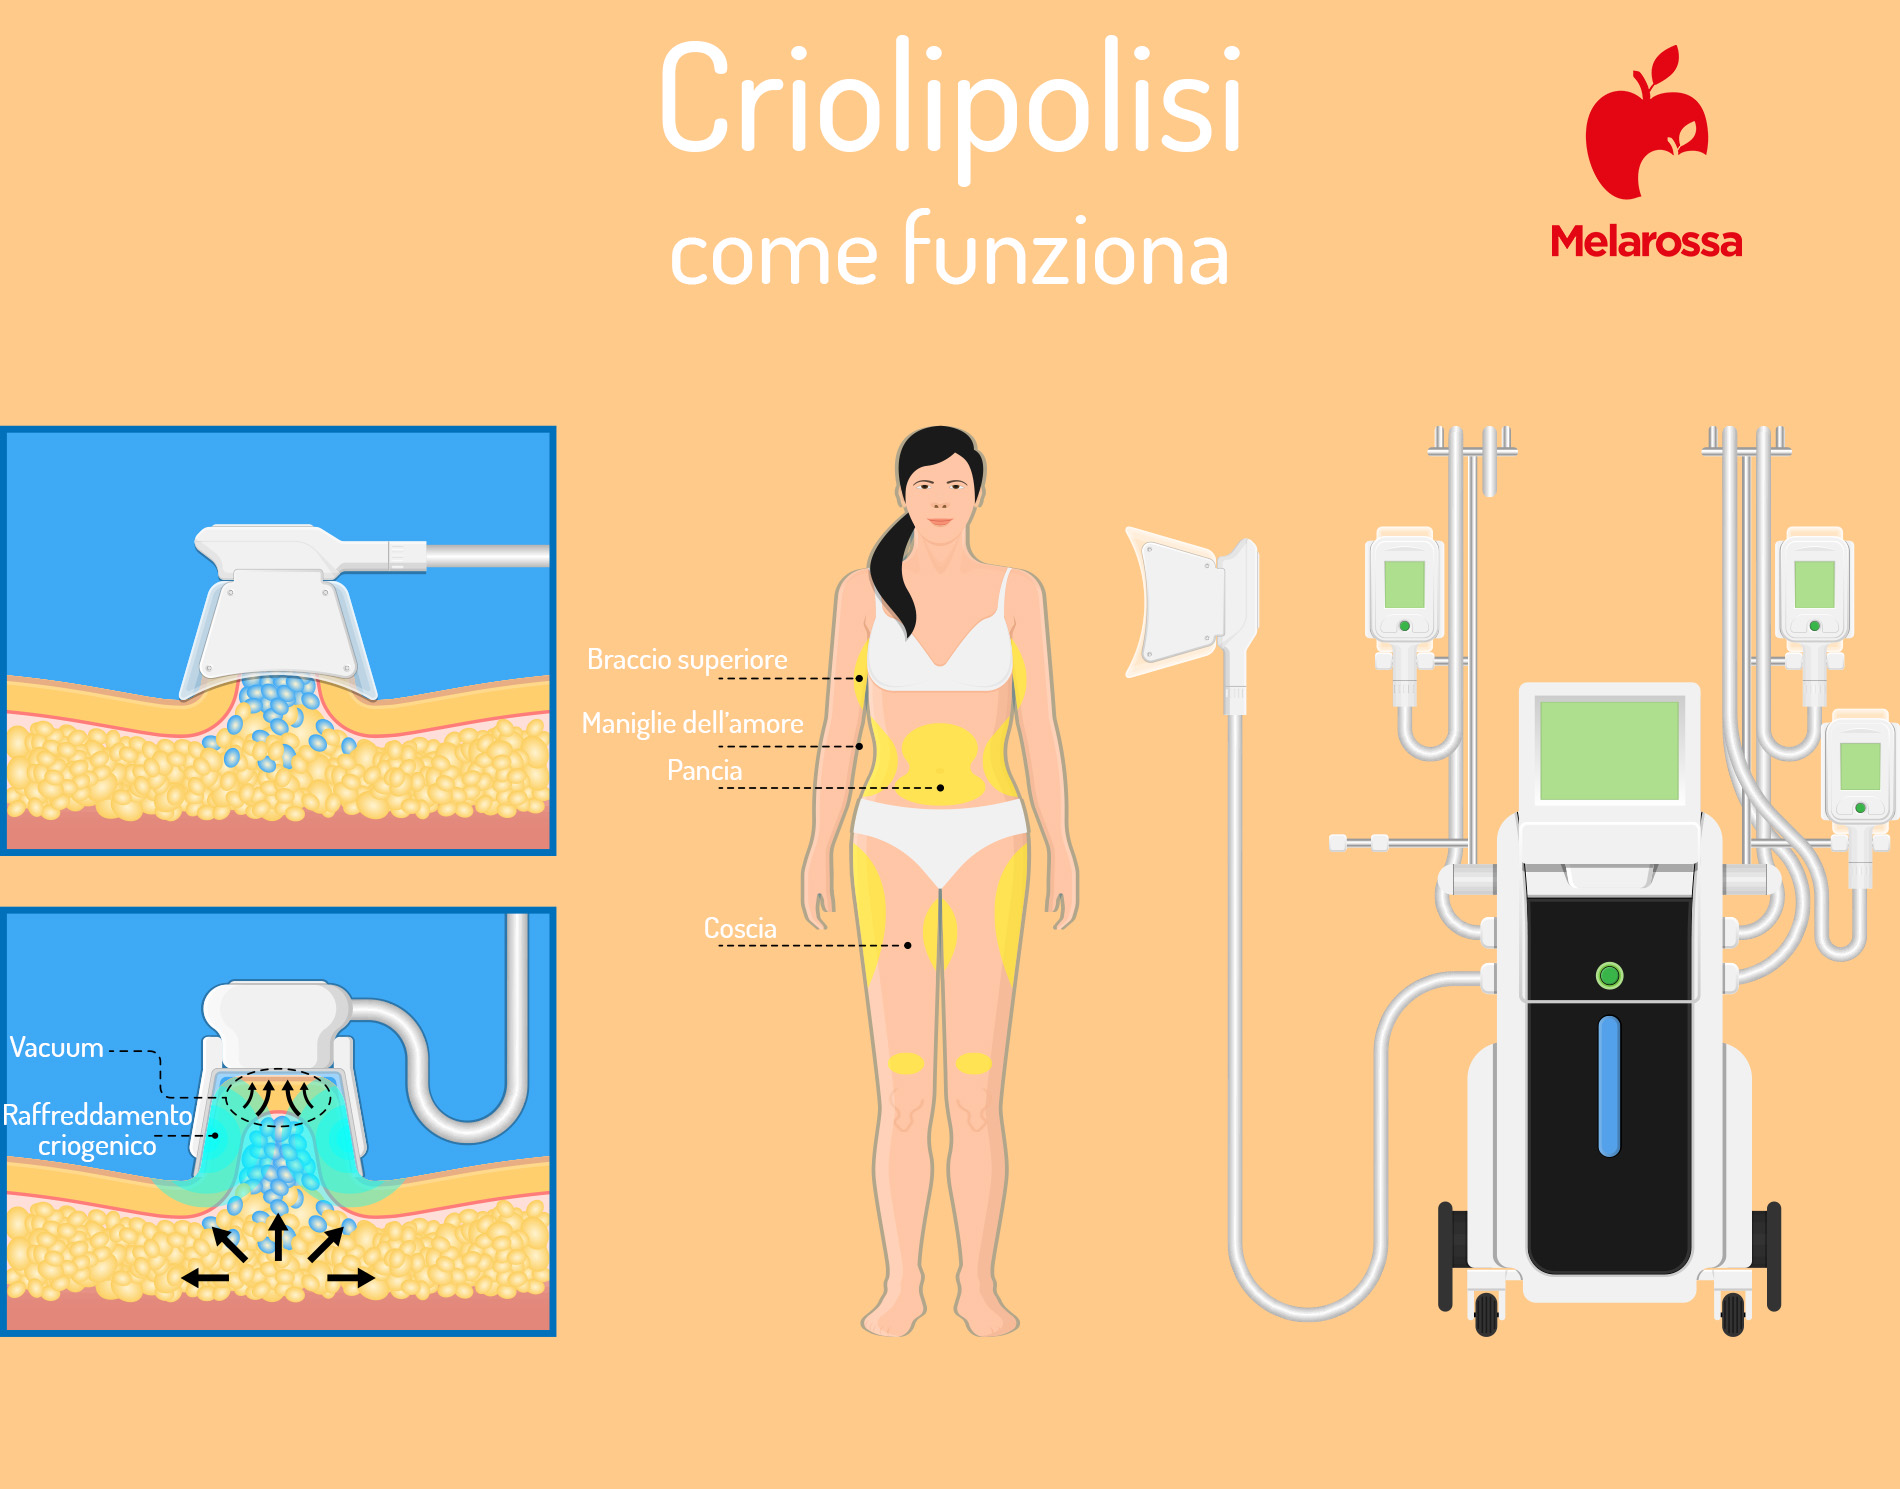 criolipolisi: come funziona